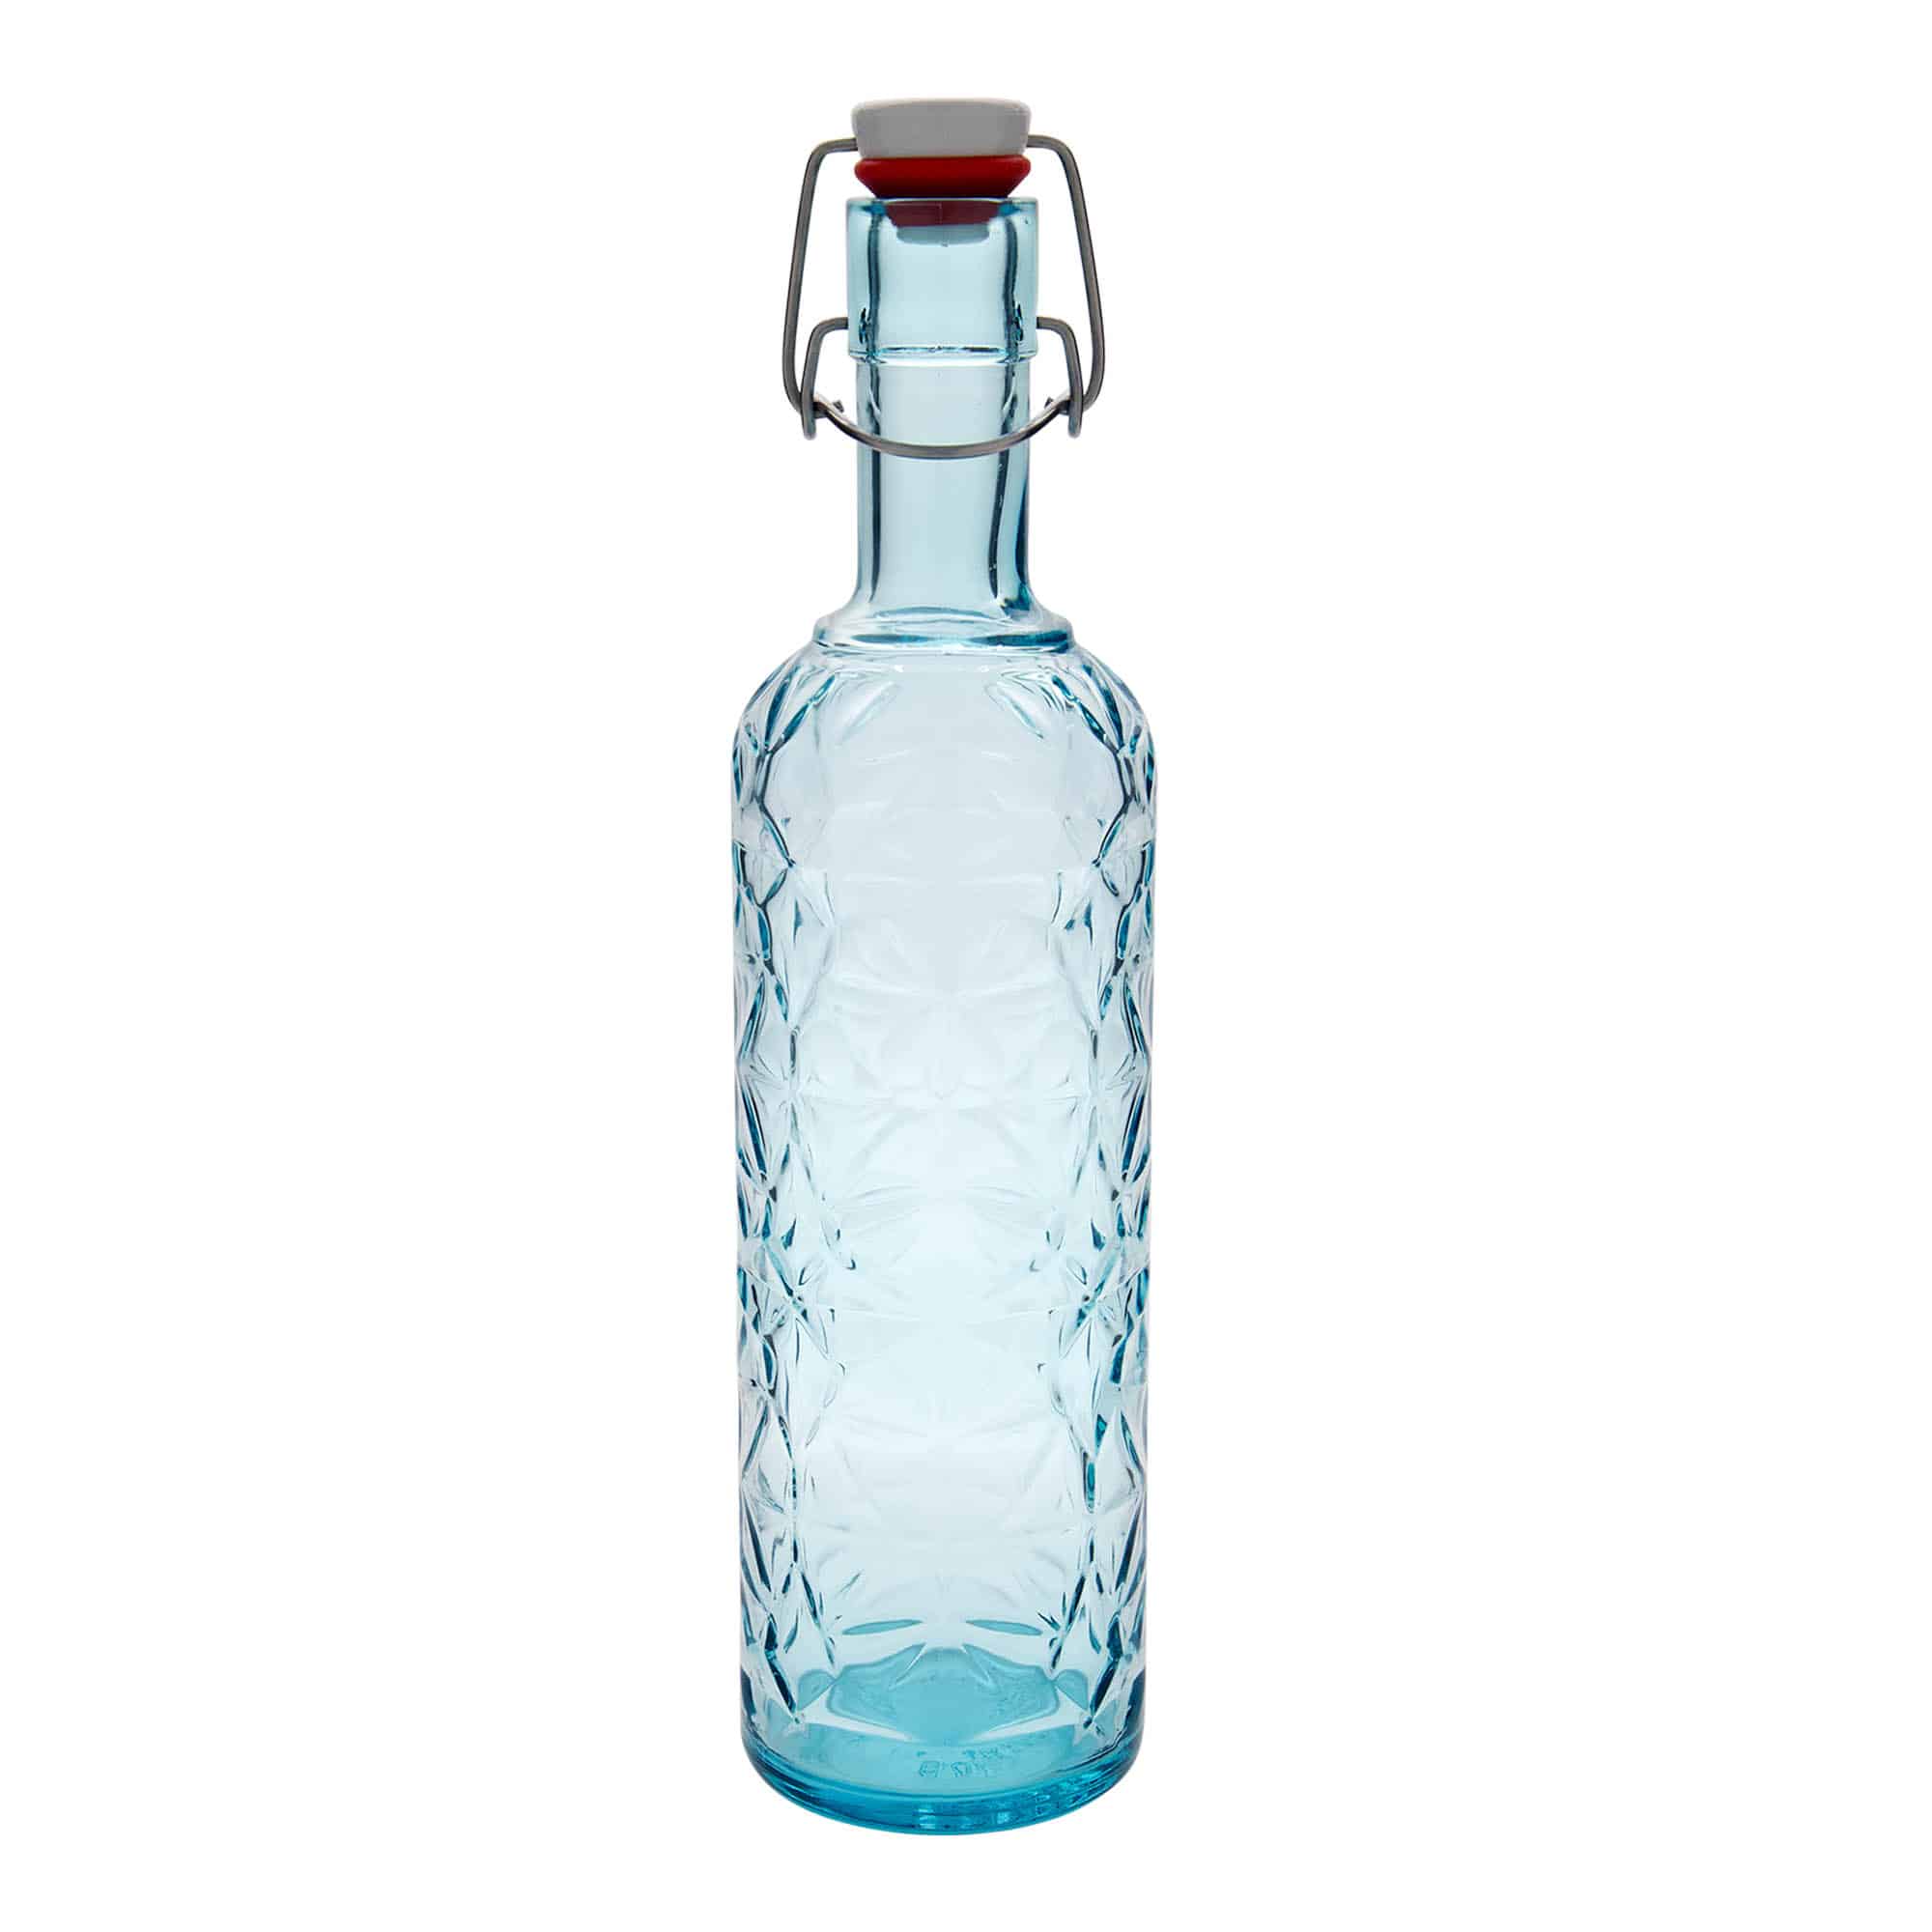 1,000 ml glass bottle 'Oriente', azure blue, closure: swing top